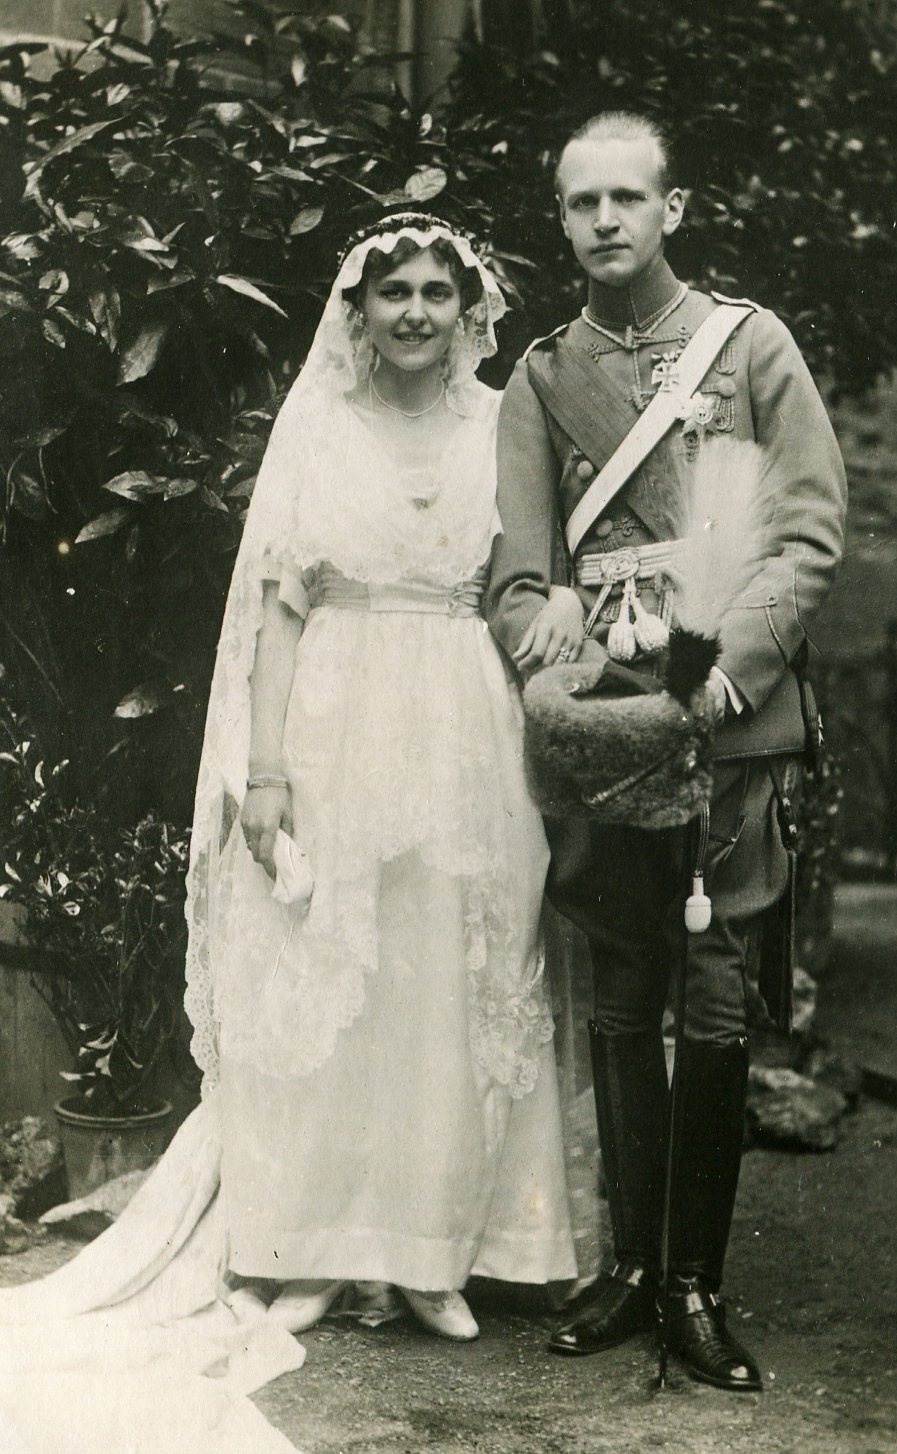 Fotografie, Erbprinz Boto und Przs. Renata von Schonaide Carolatte als Brautpaar 1920 (Schloß Wernigerode GmbH RR-F)